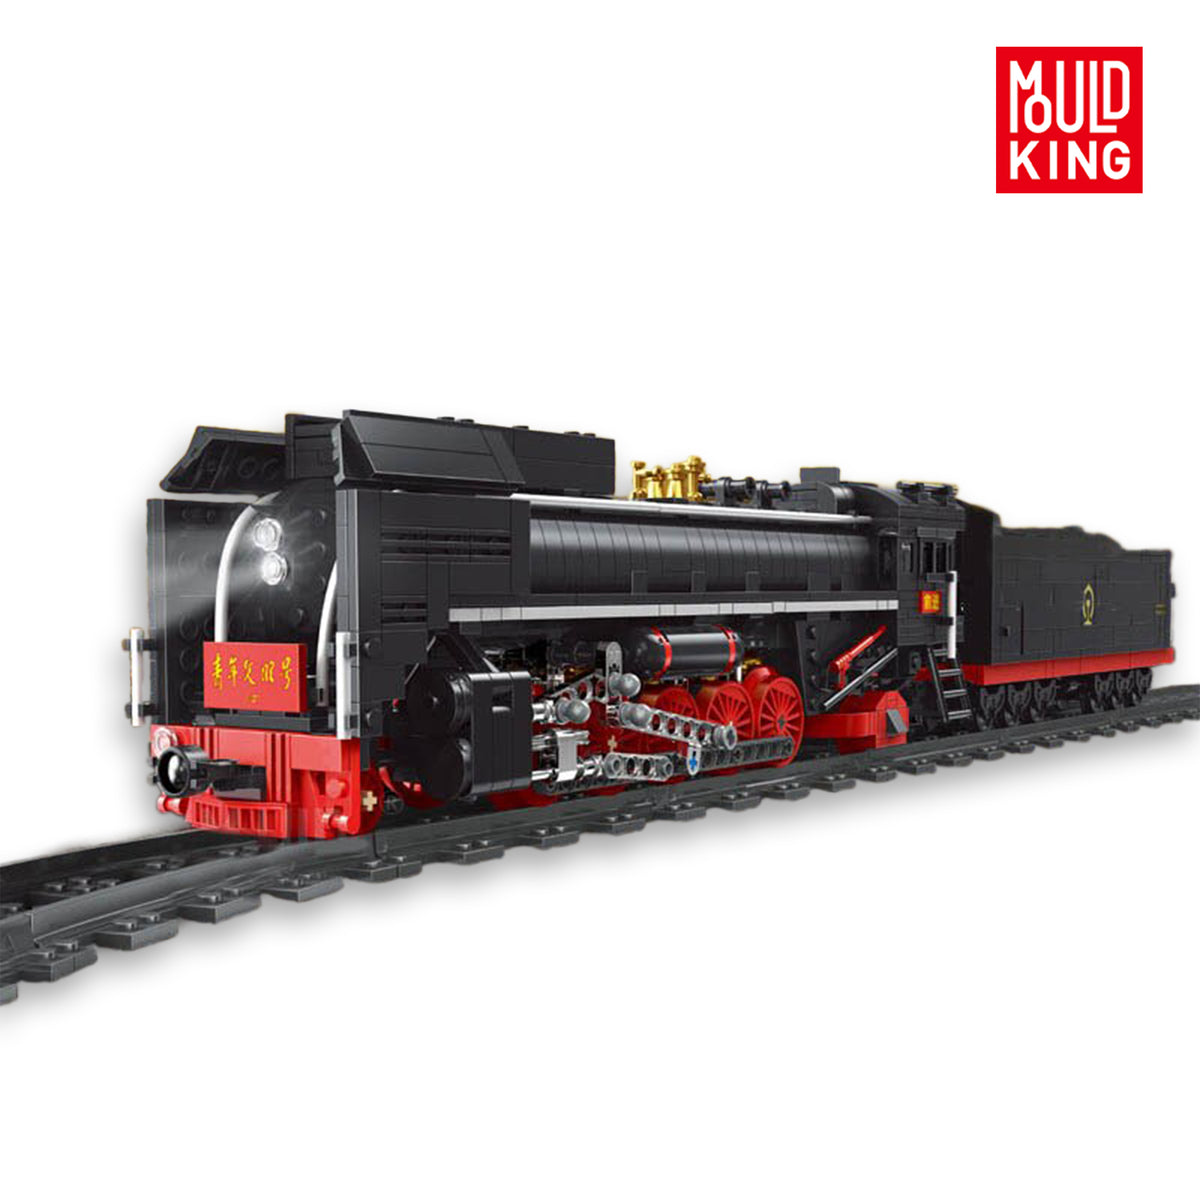 12003 - Dampflokomotive (Mould King)